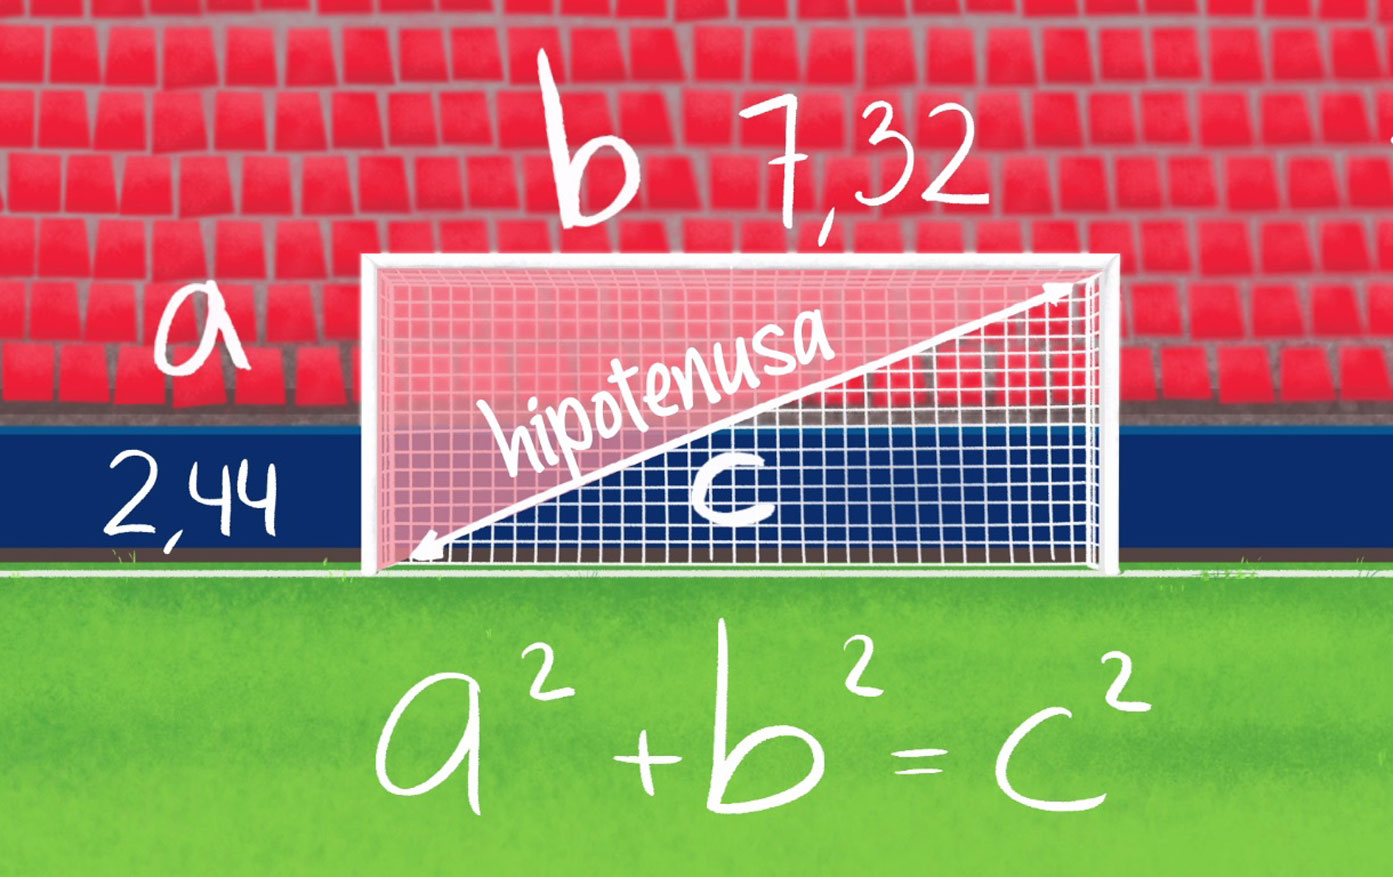 ¿Sabrías explicar el teorema de Pitágoras en una portería de fútbol?